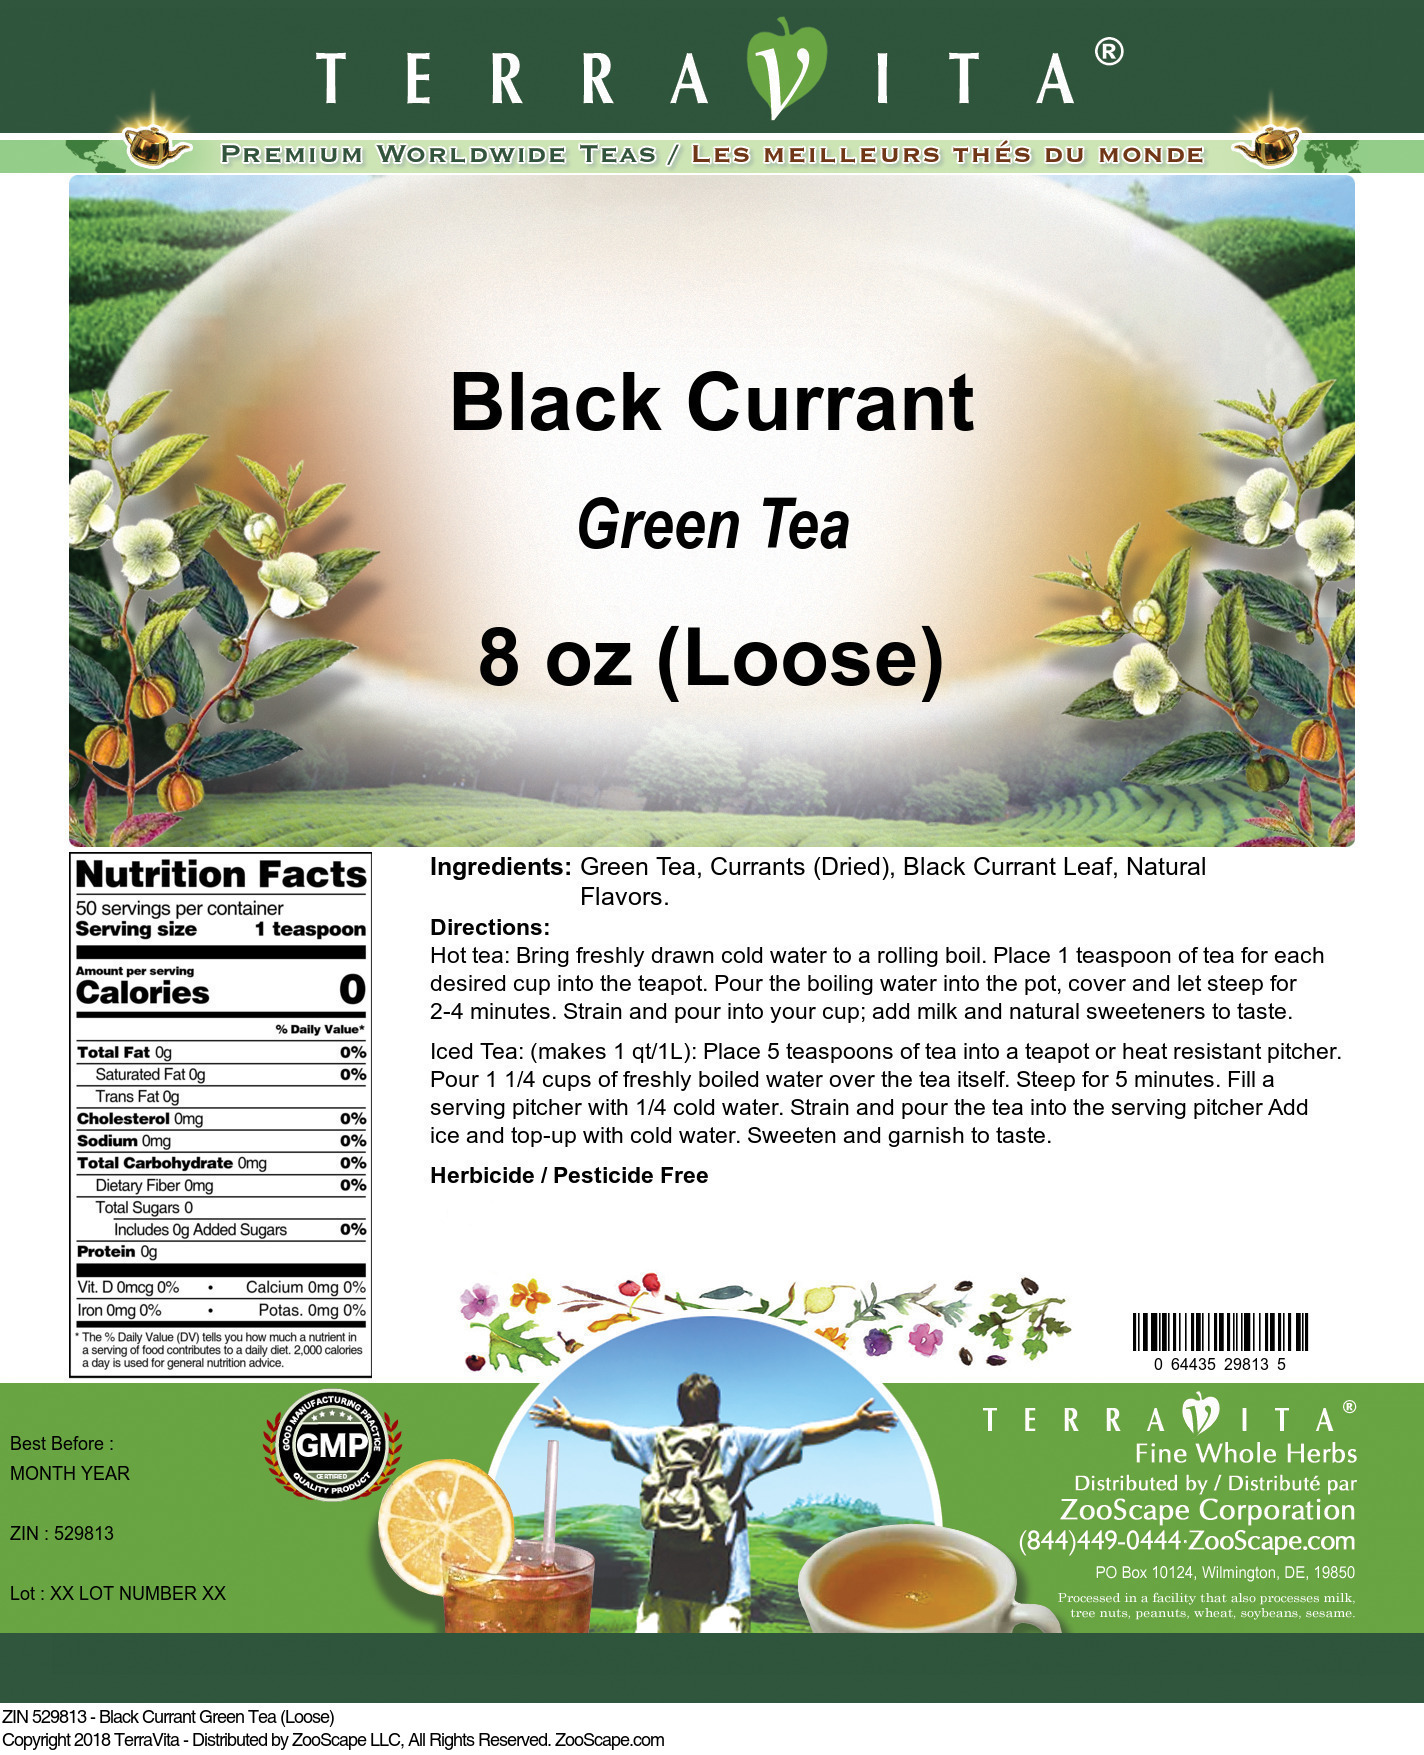 Black Currant Green Tea (Loose) - Label